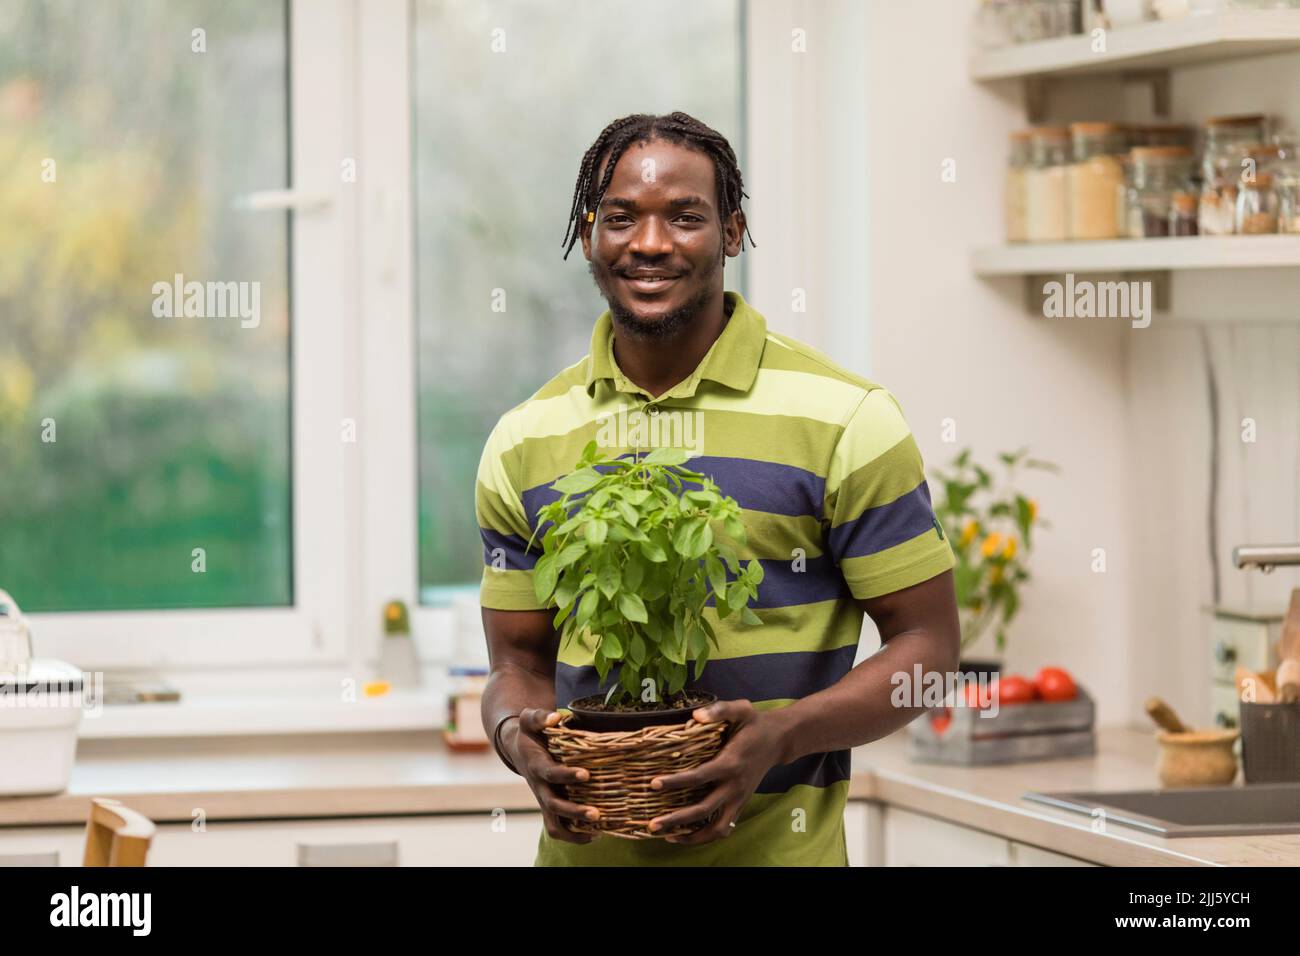 Homme souriant tenant une plante de basilic debout dans la cuisine Banque D'Images